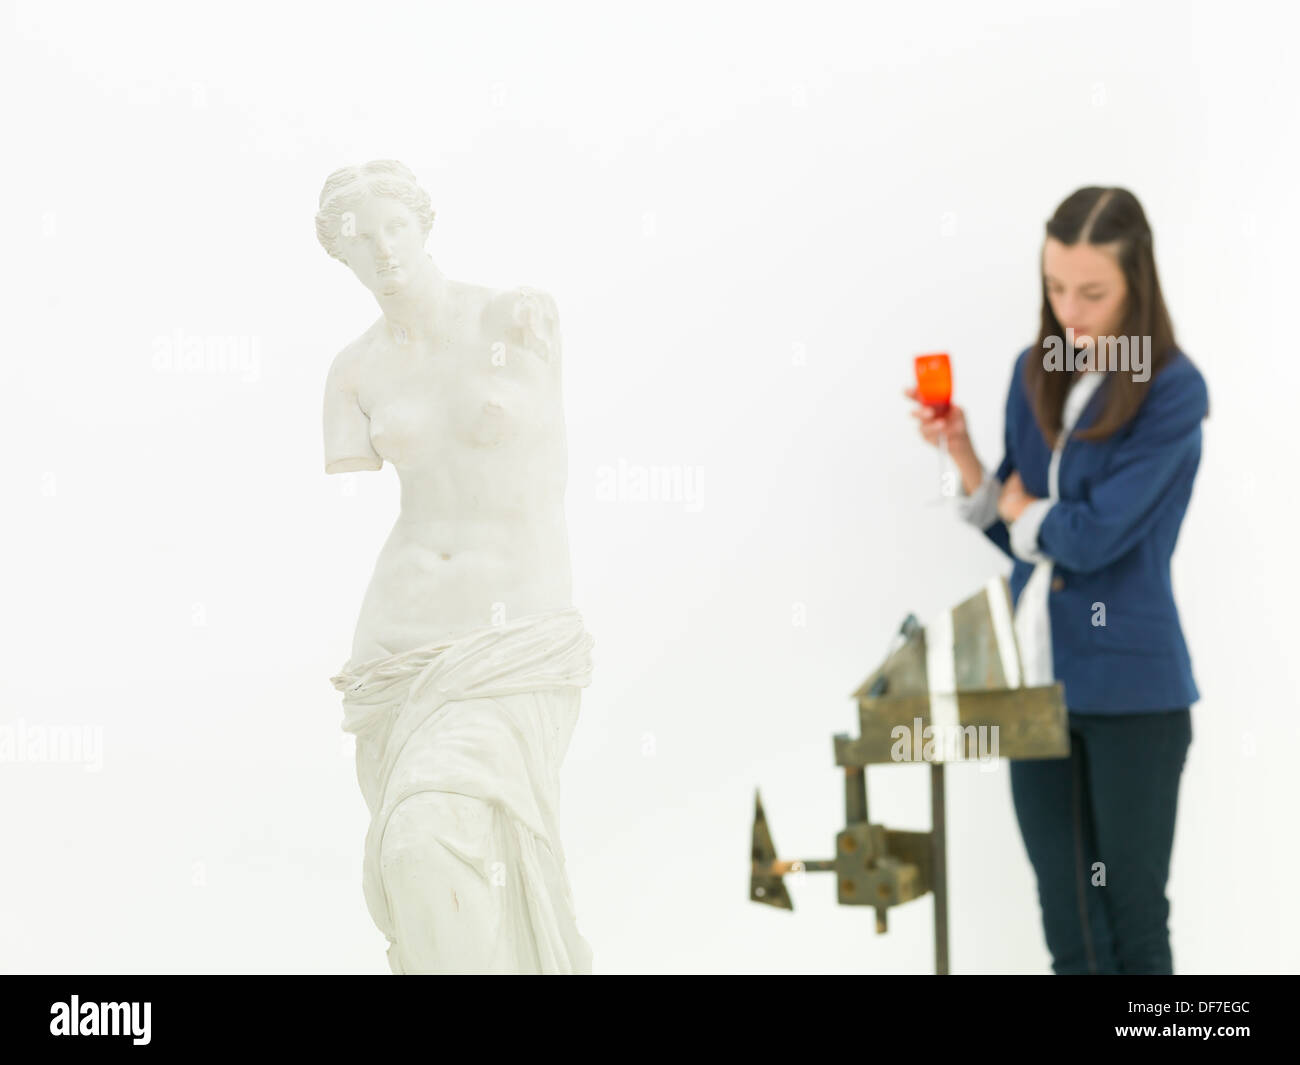 Sculpture femme scrutant derrière une réplique de la Vénus de Milo statue dans un musée Banque D'Images